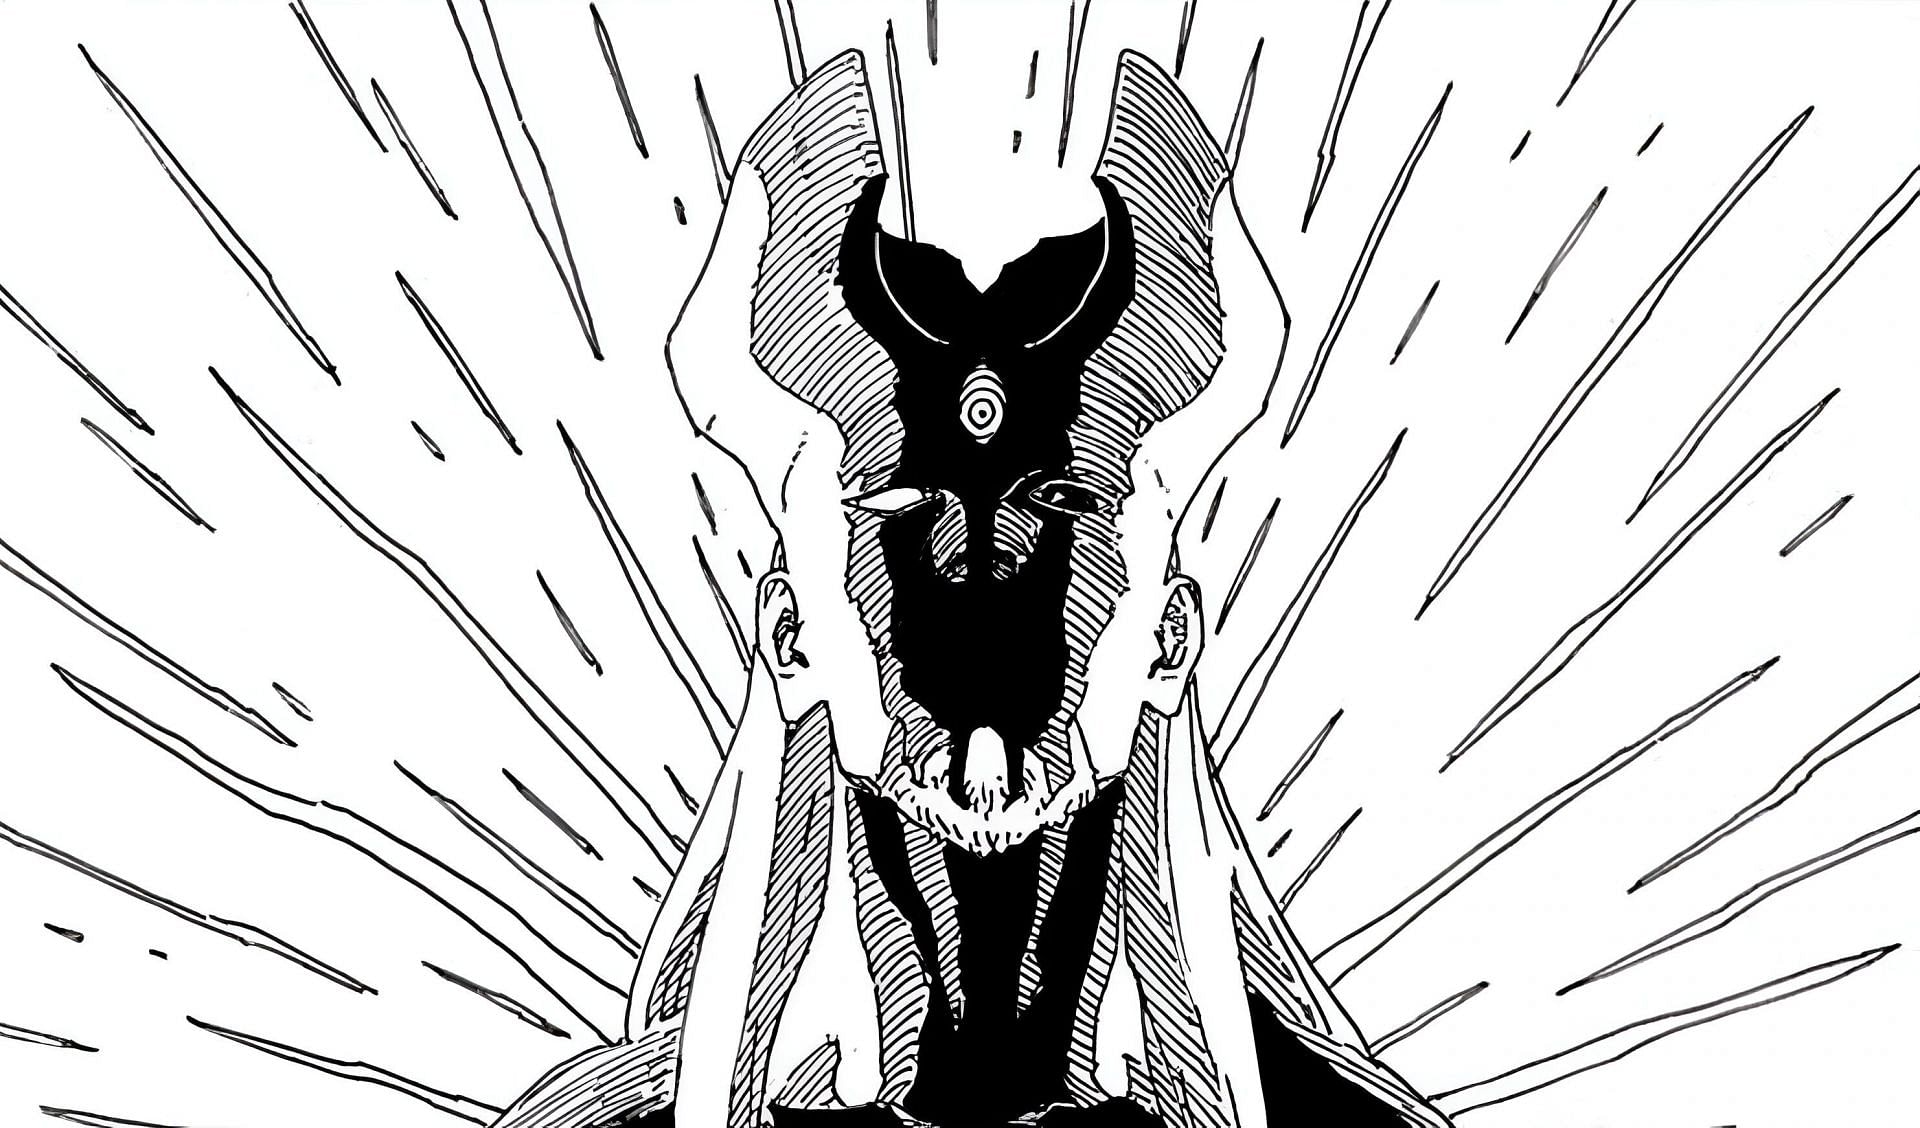 Shibai Otsutsuki as seen in the manga series (Image via Shueisha)